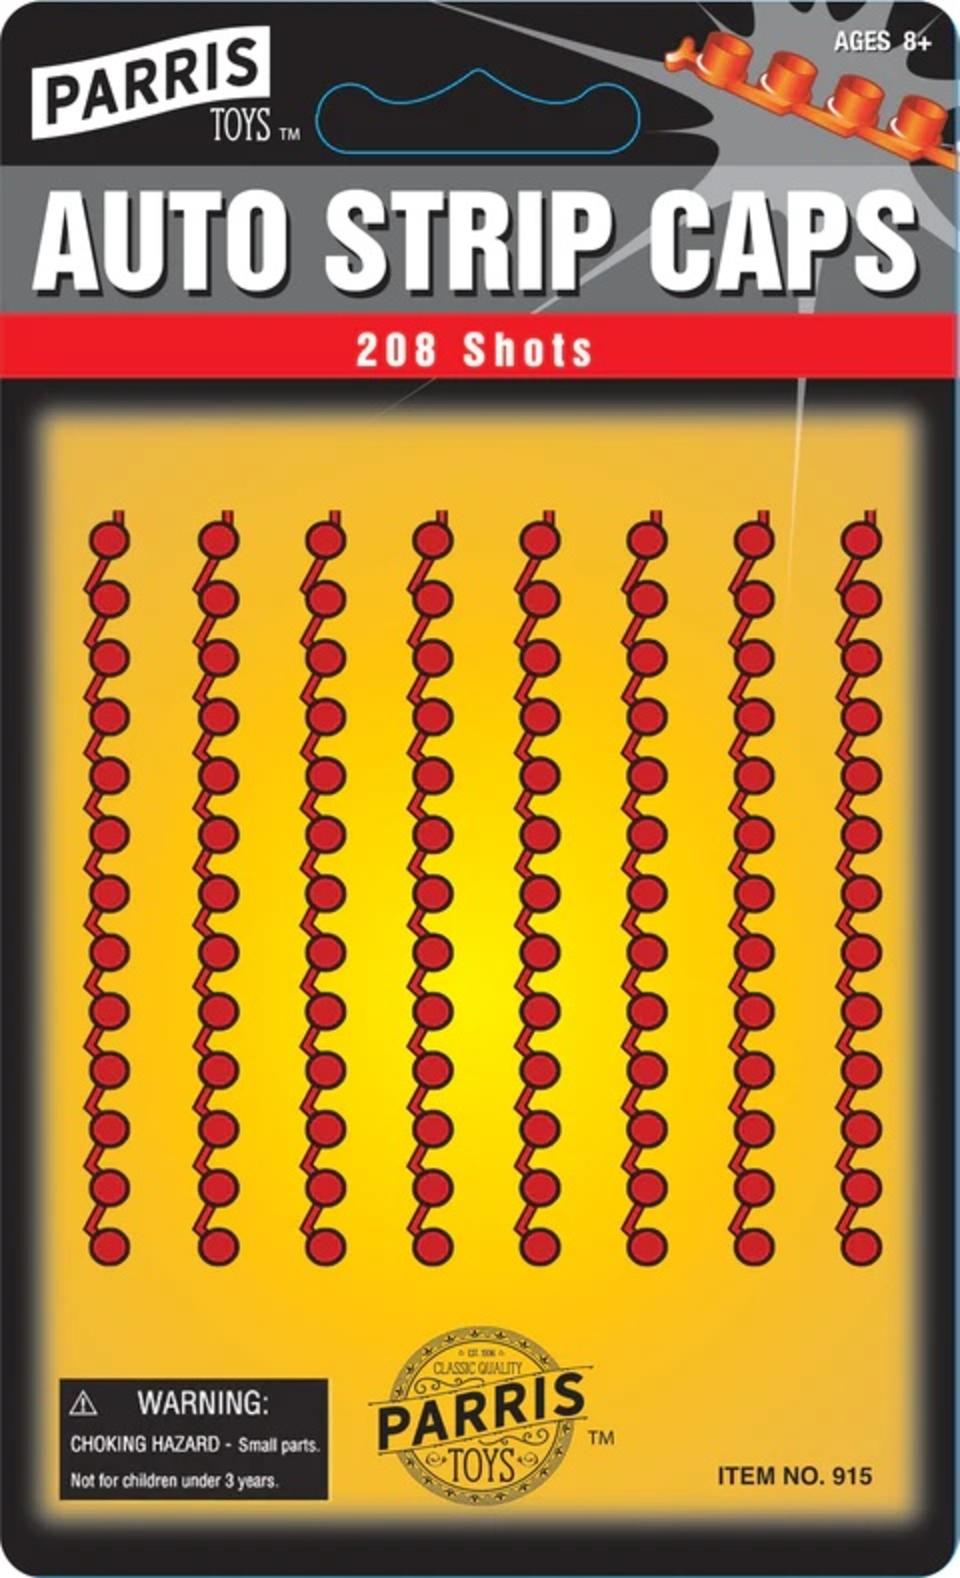 208 Single Action Shots.  LIMIT: 10 units per order. 